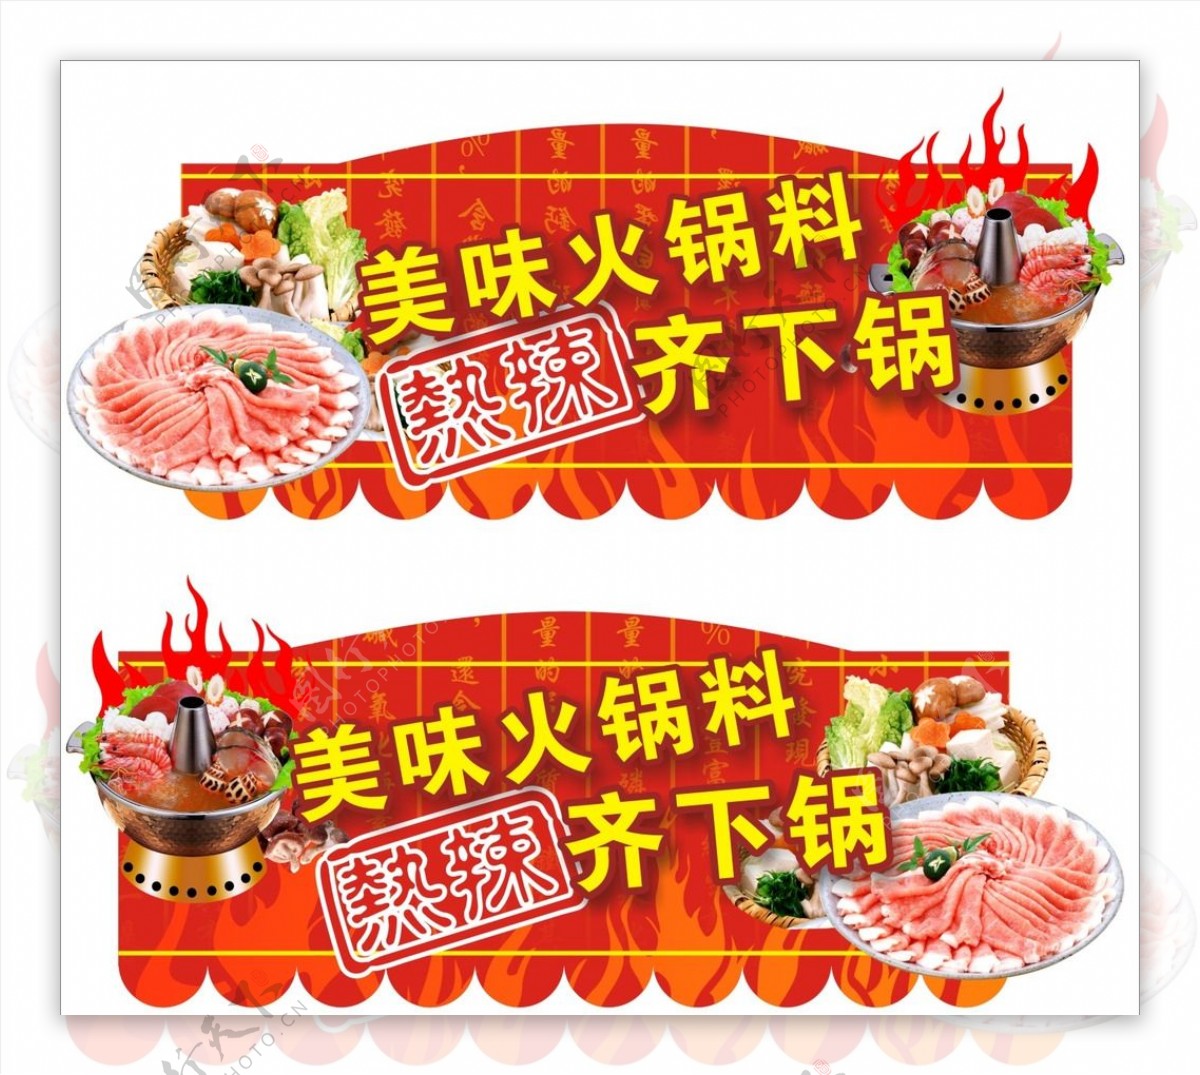 火锅节海鲜美食店招牌图片